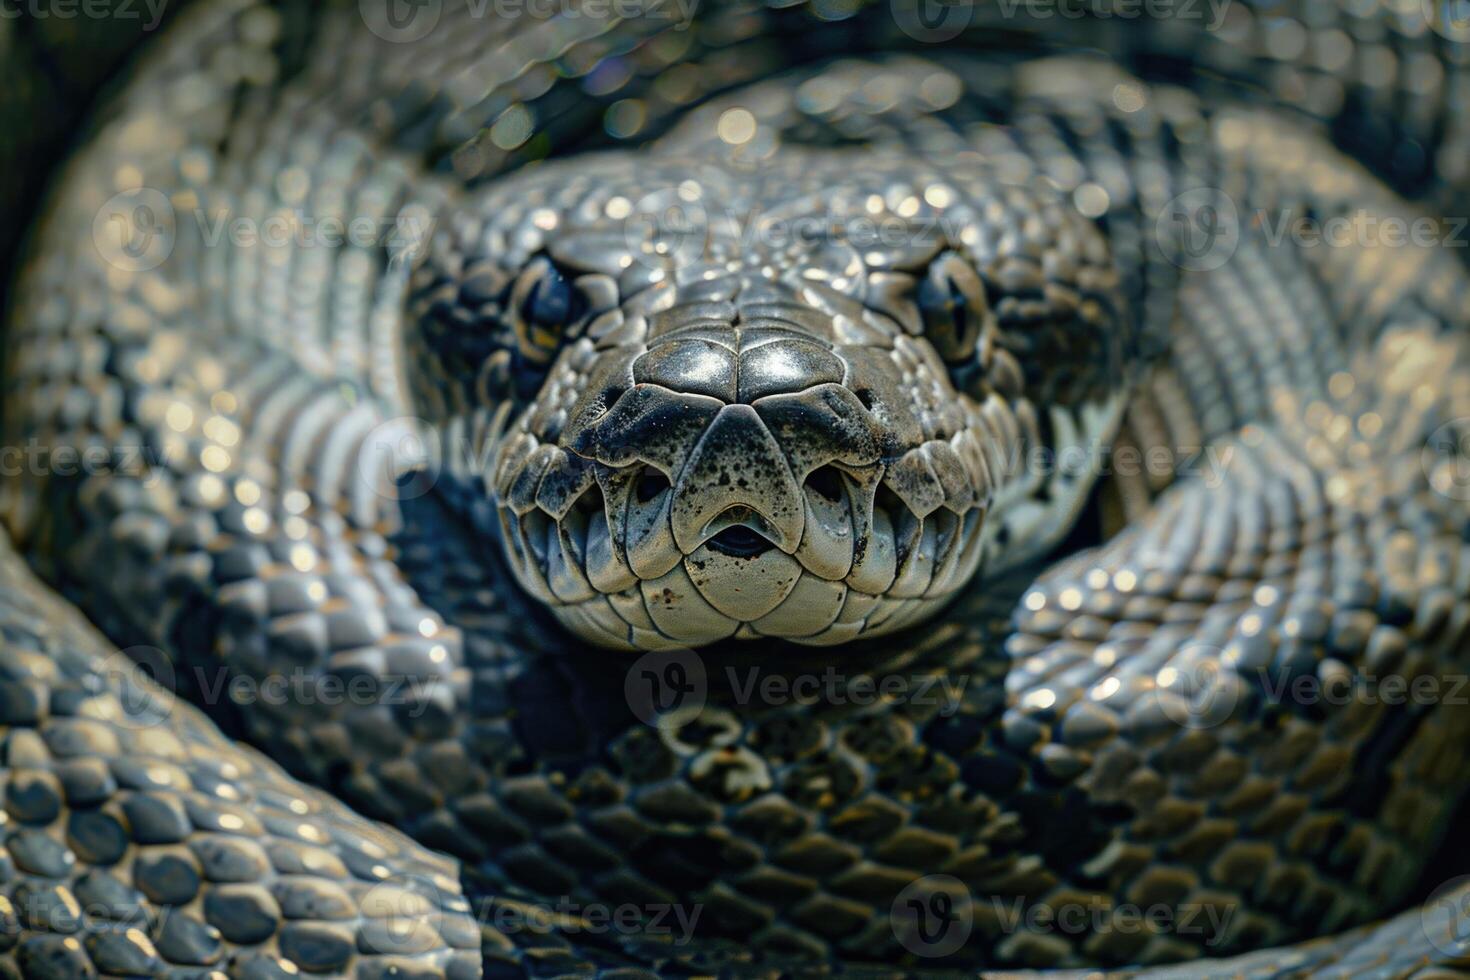 serpente pele réptil foto